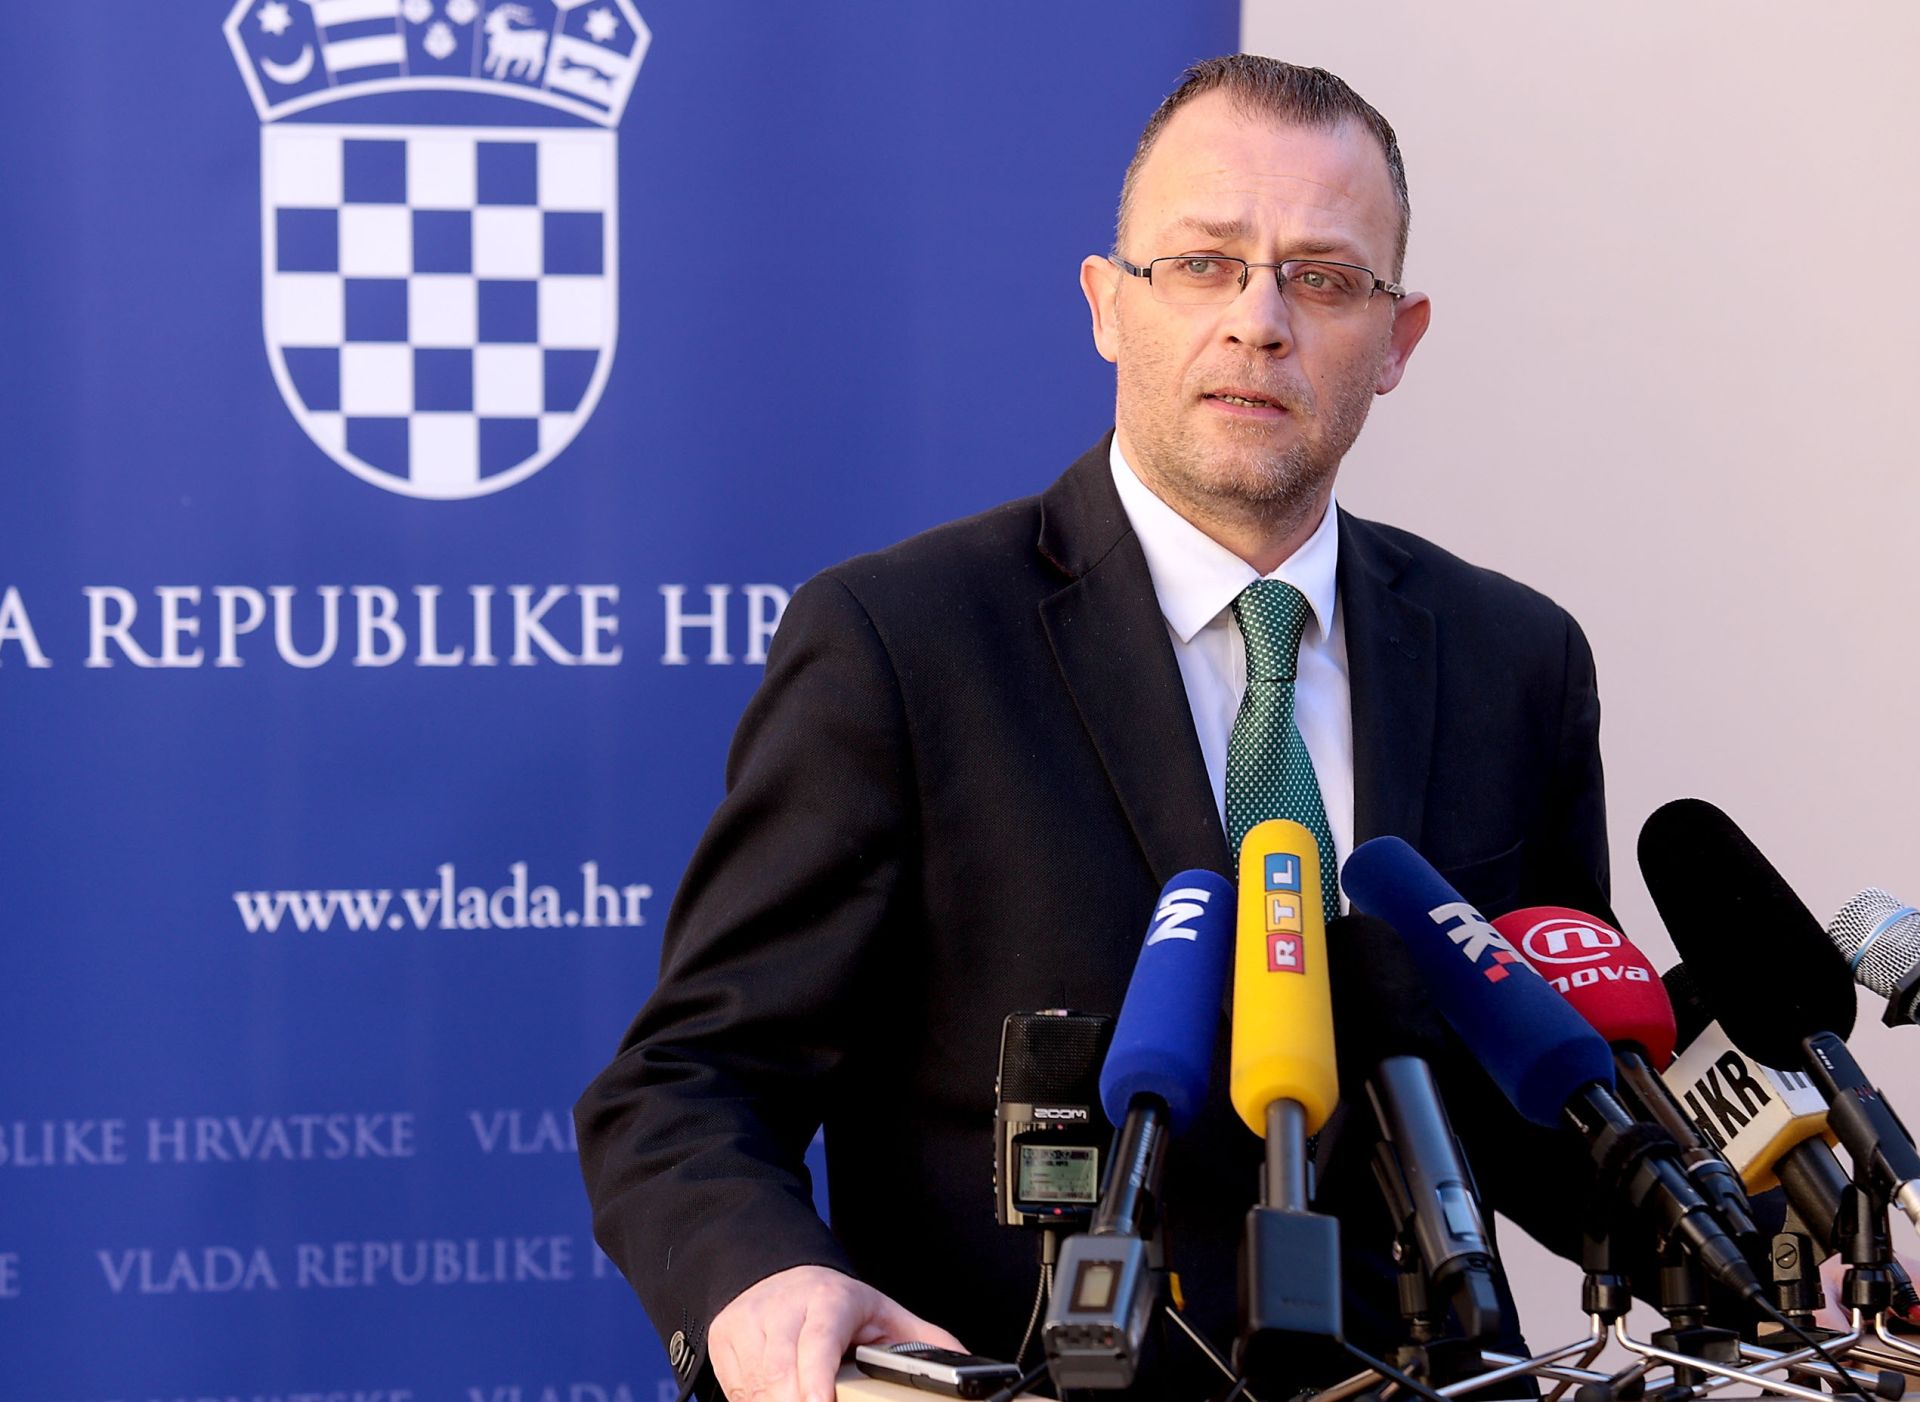 11.02.2016., Zagreb - Ministar kulture Zlatko Hasanbegovic dao je izjavu vezanu na optuzbe koje se iznose u medijima. Photo: Patrik Macek/PIXSELL